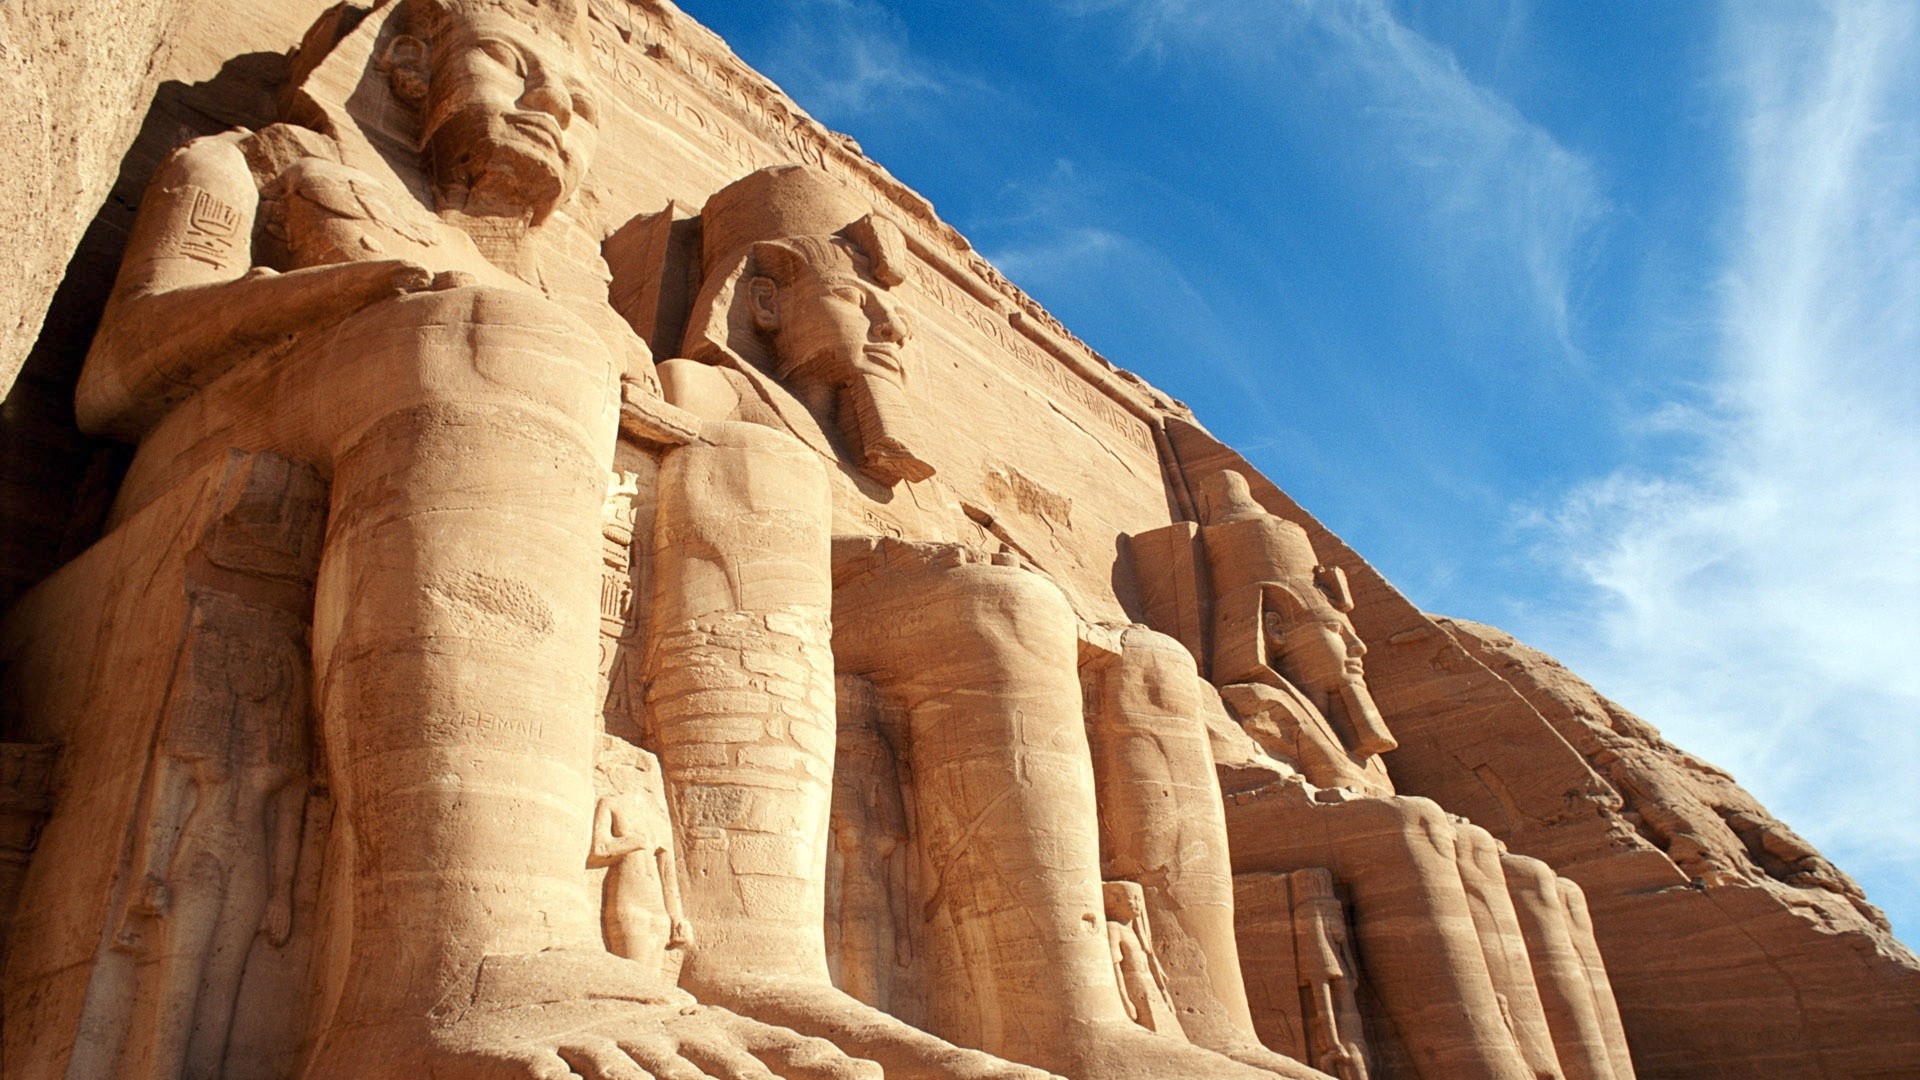 древняя архитектура скульптура песчаник монстр путешествия искусство пустыня древние статуя фараон могила архитектура камень на открытом воздухе религия небо